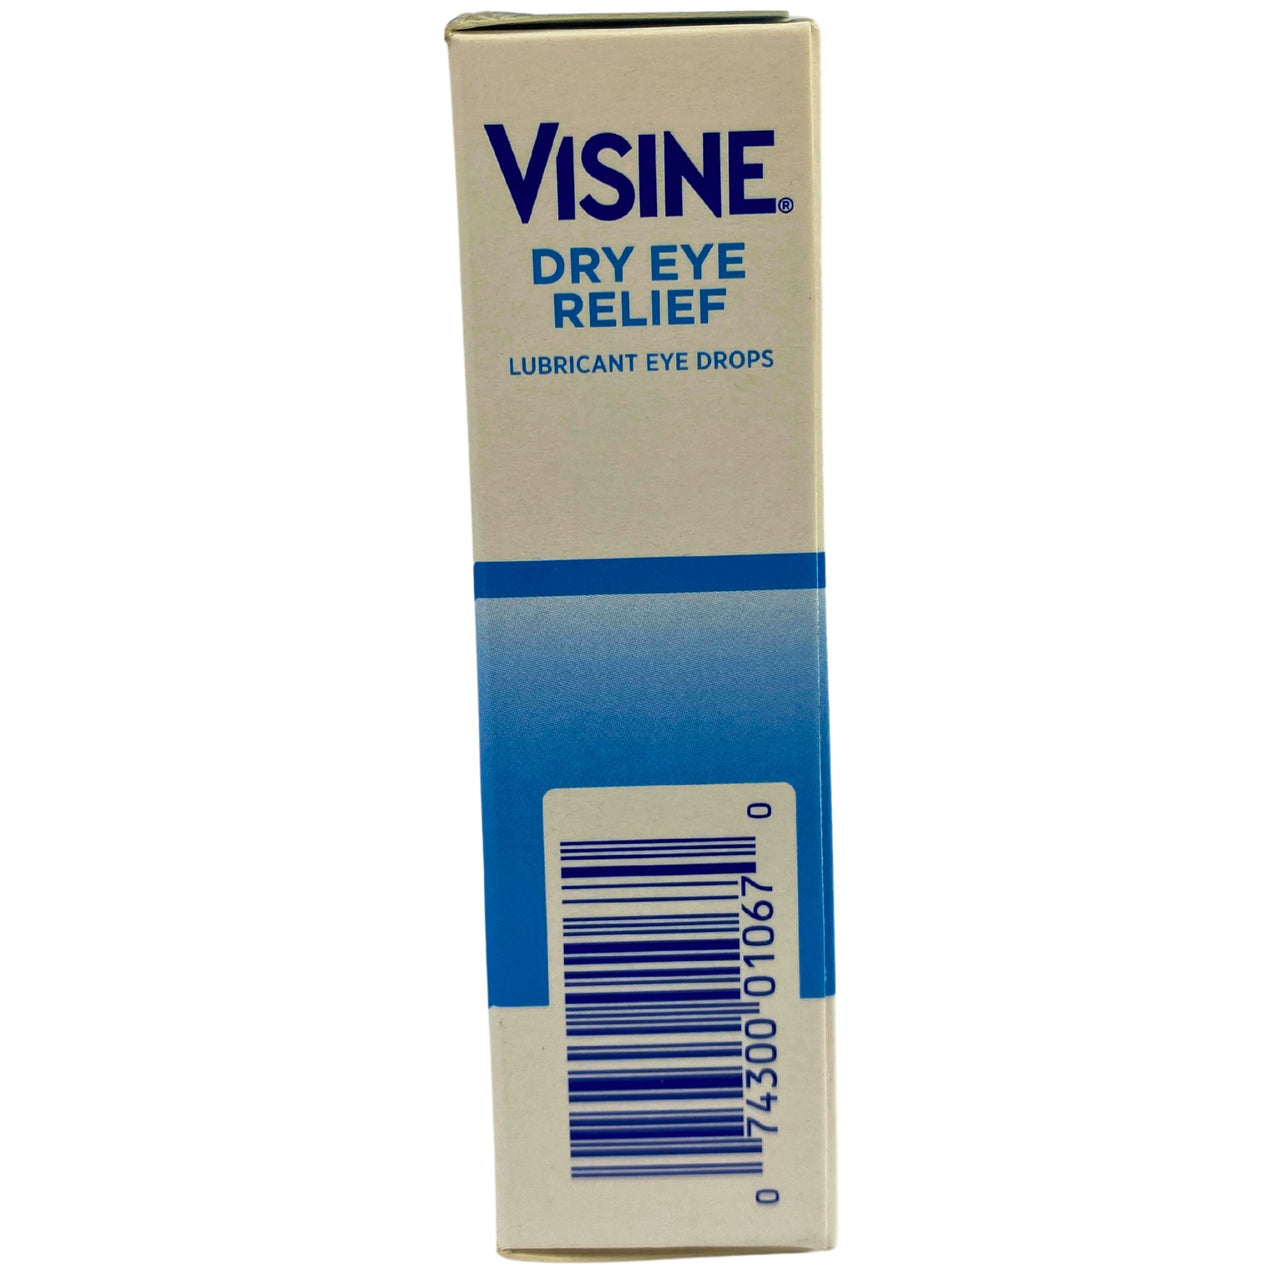 Visine Dry Eye Relief Moisturizes